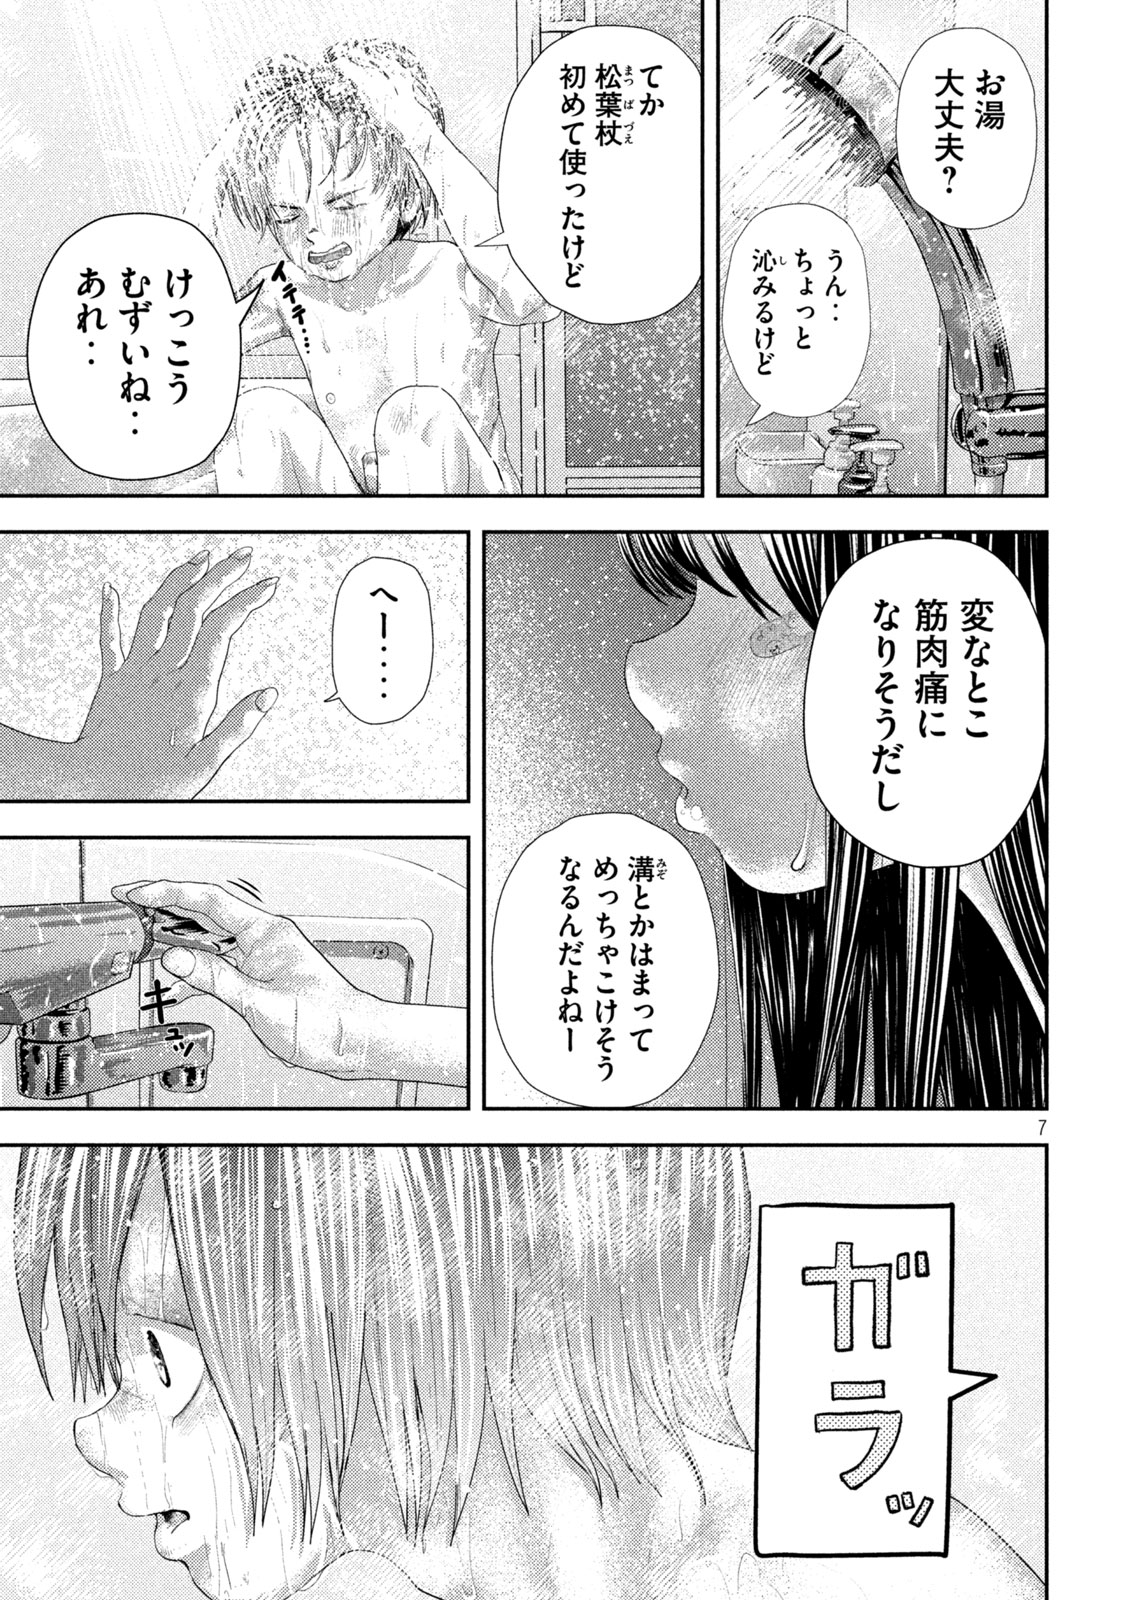 Nezumi no Koi - Chapter 27 - Page 7